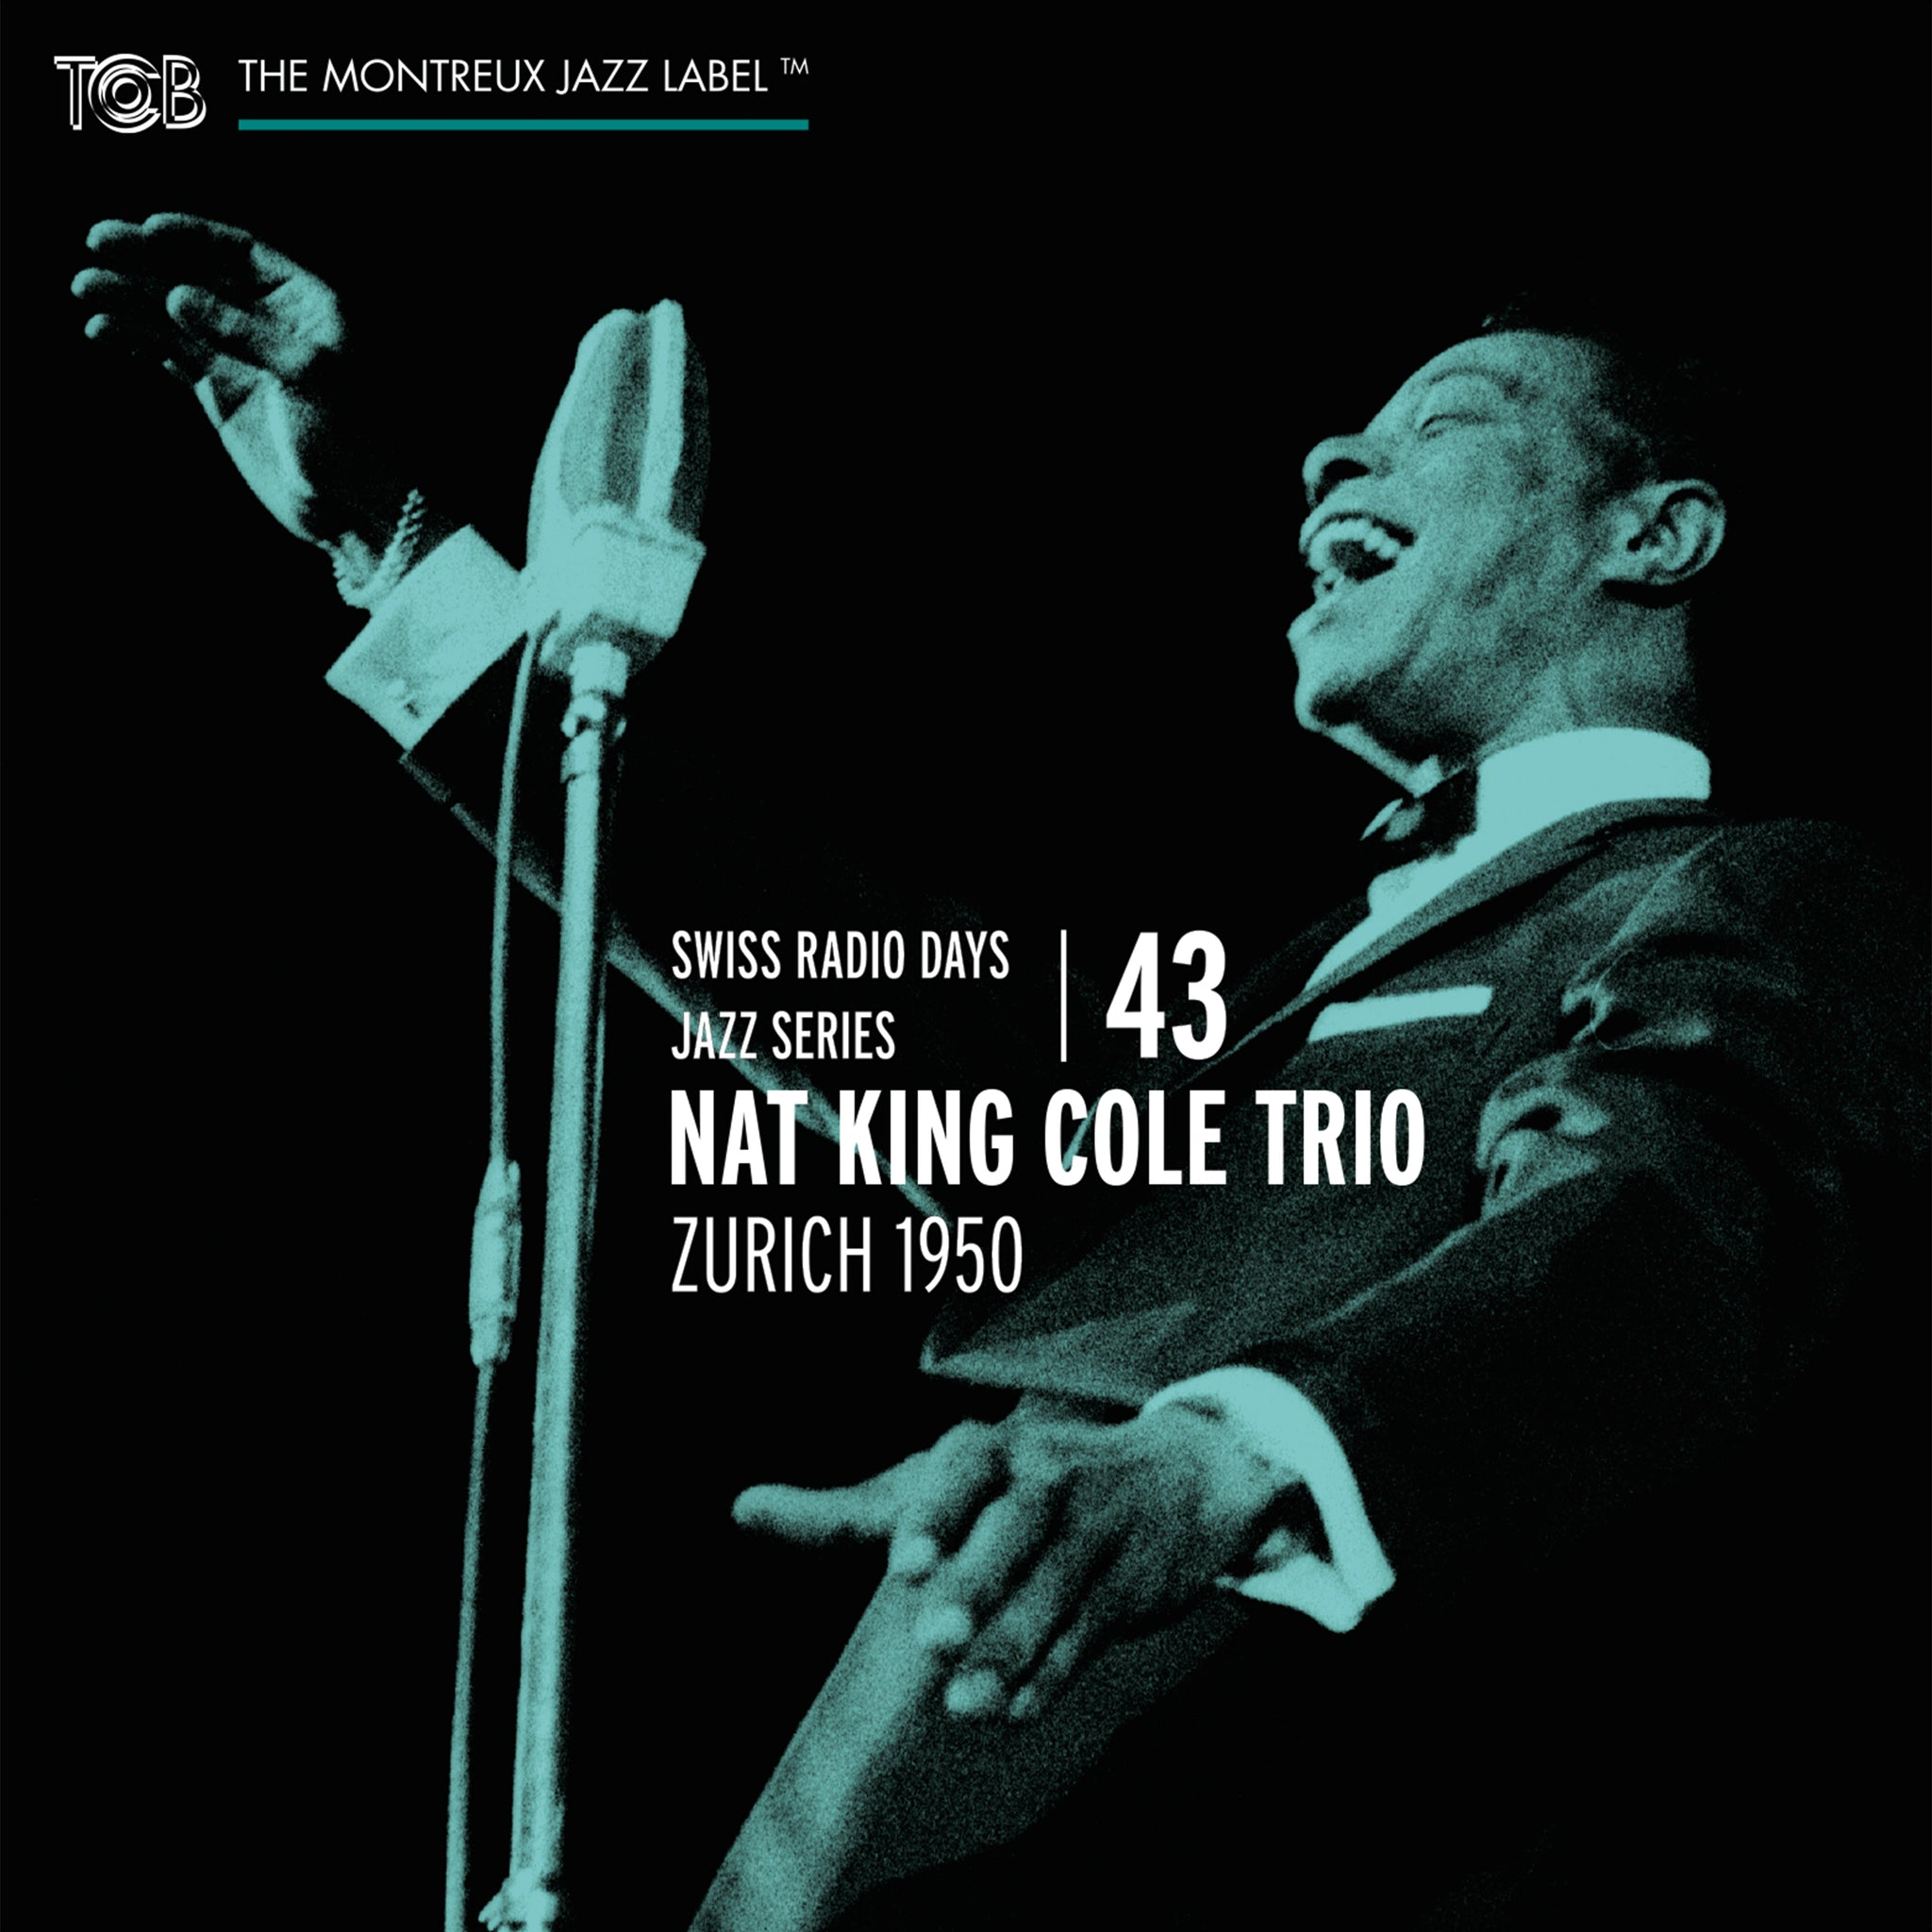 Swiss Radio Days, Vol. 43 - Zurich 1950 / Nat King Cole Trio